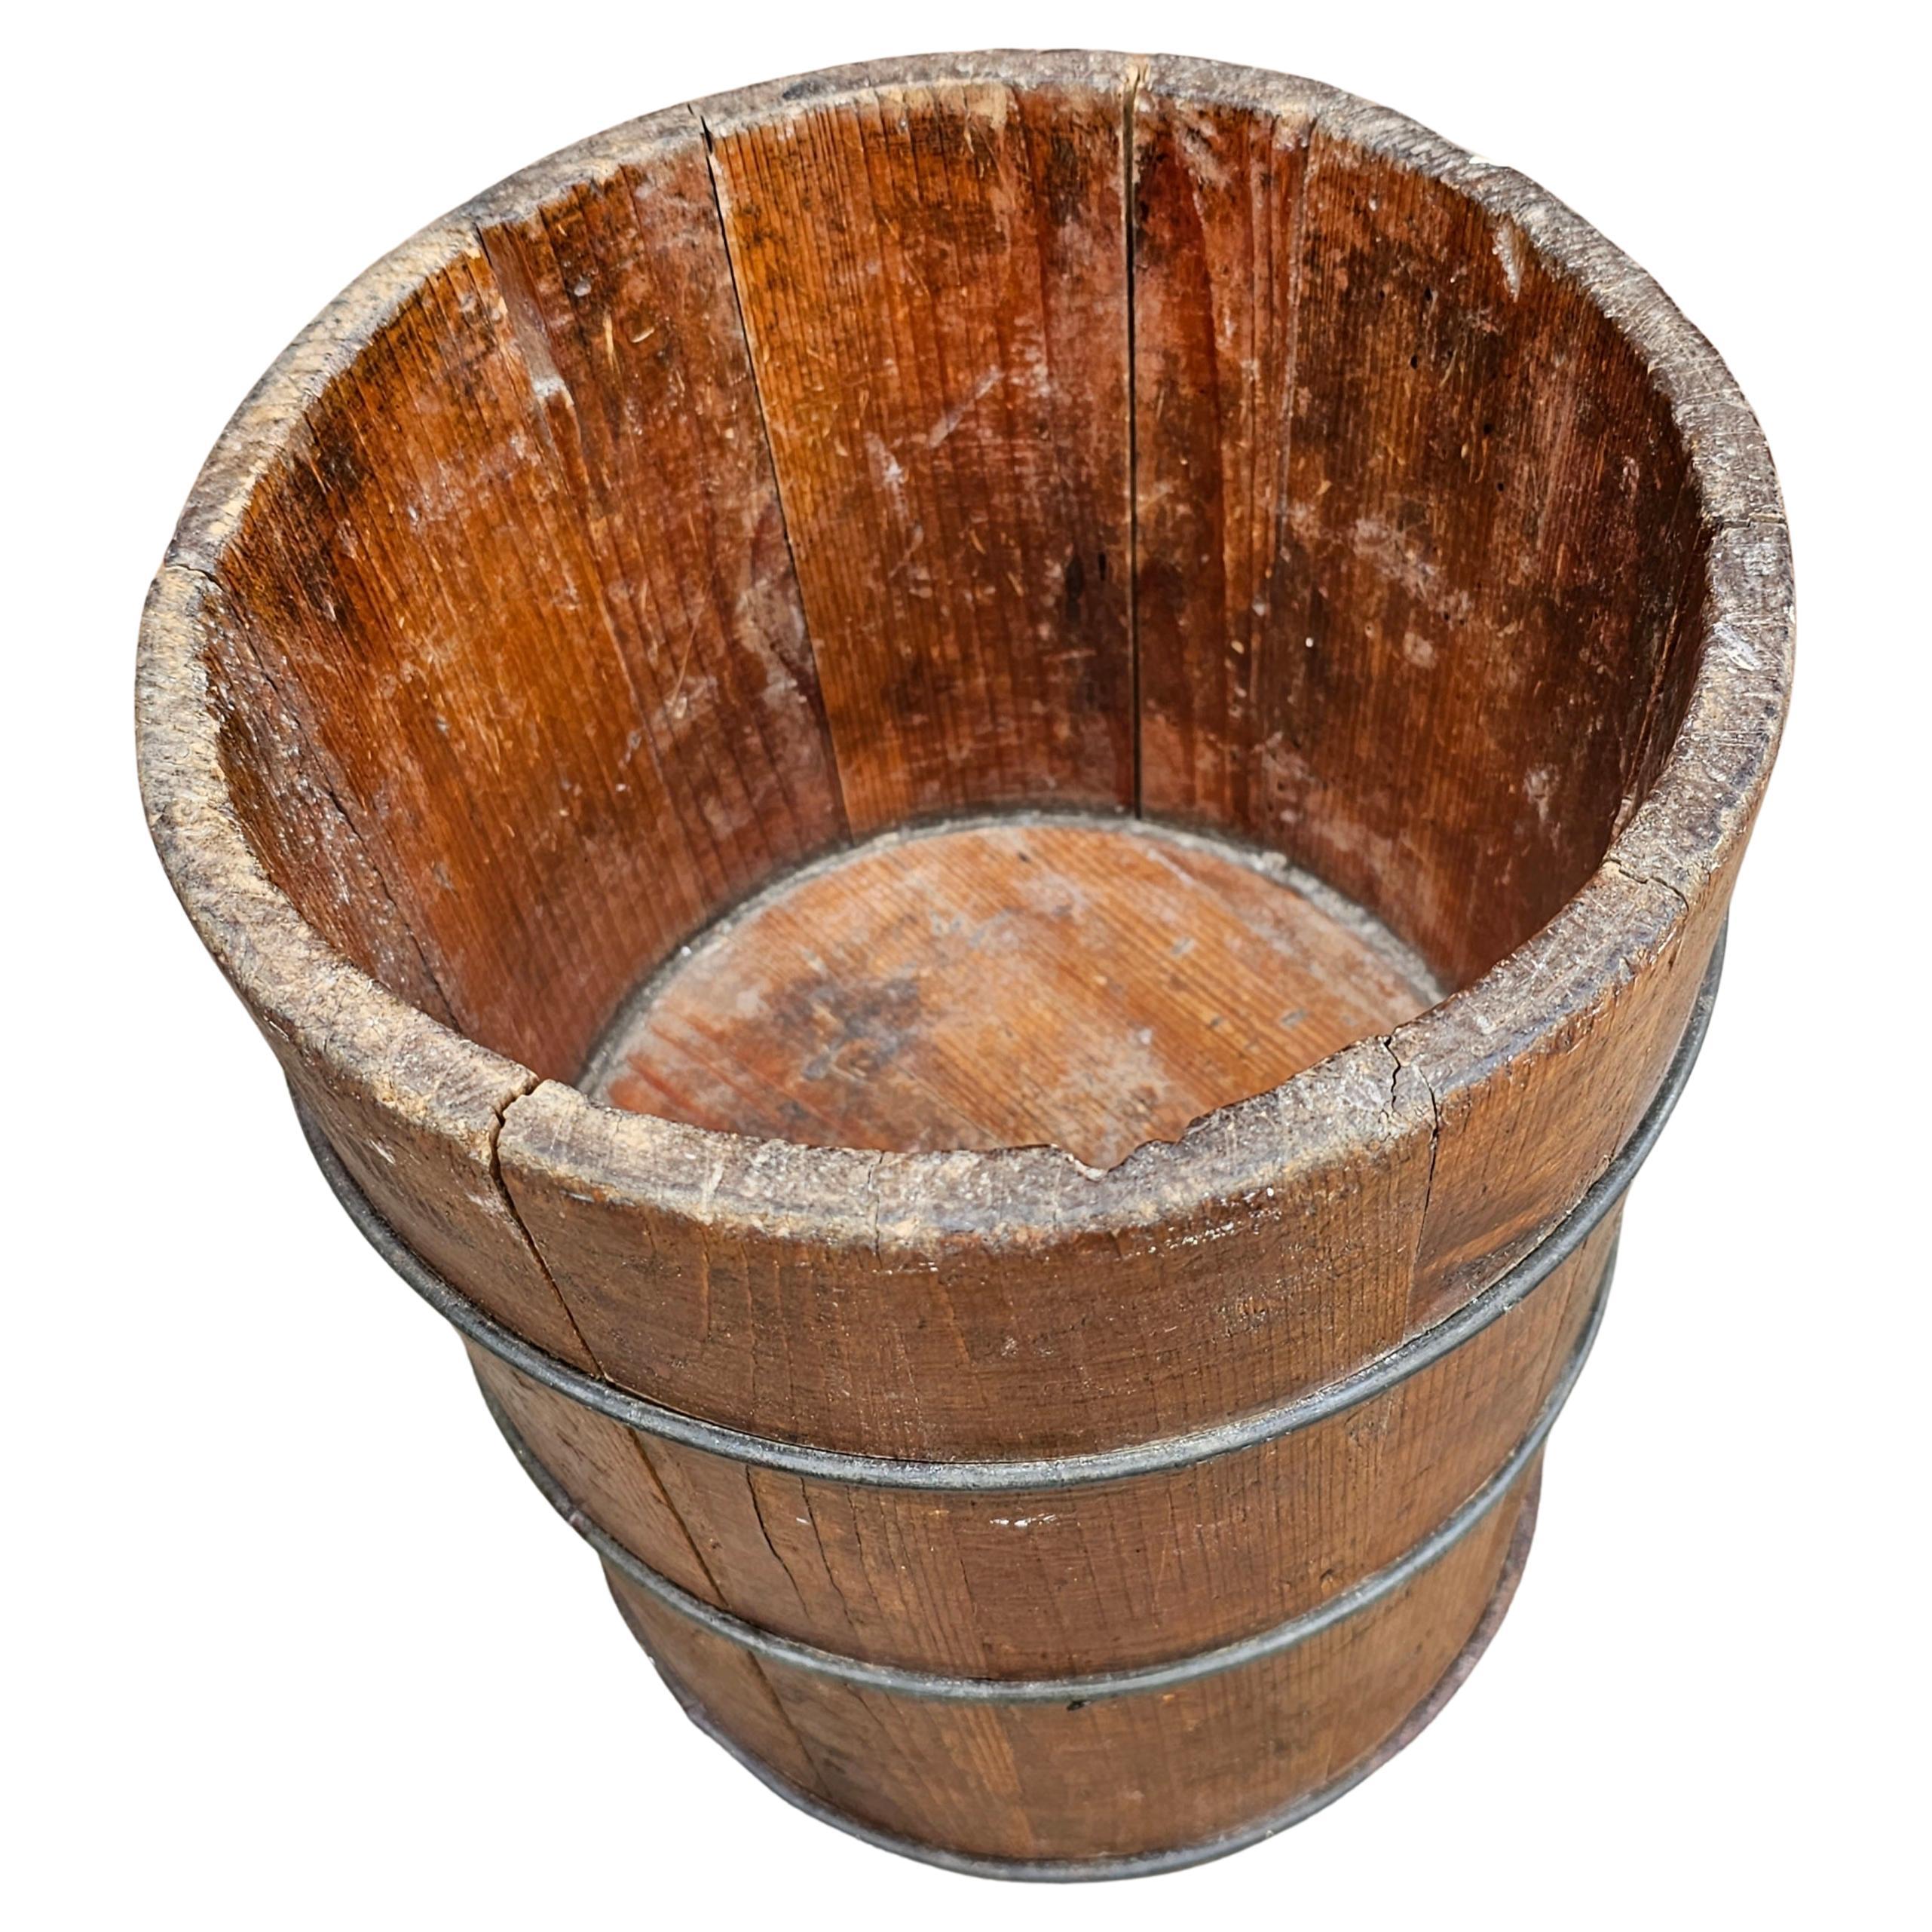 Ein handgefertigter, gedrechselter Holzkübel aus dem 19. Jahrhundert, der heute als Pflanzgefäß verwendet wird. Ein wahrhaft einzigartiges Stück, das Ihrer Pflanze Originalität und Sichtbarkeit verleiht. Misst 8,75